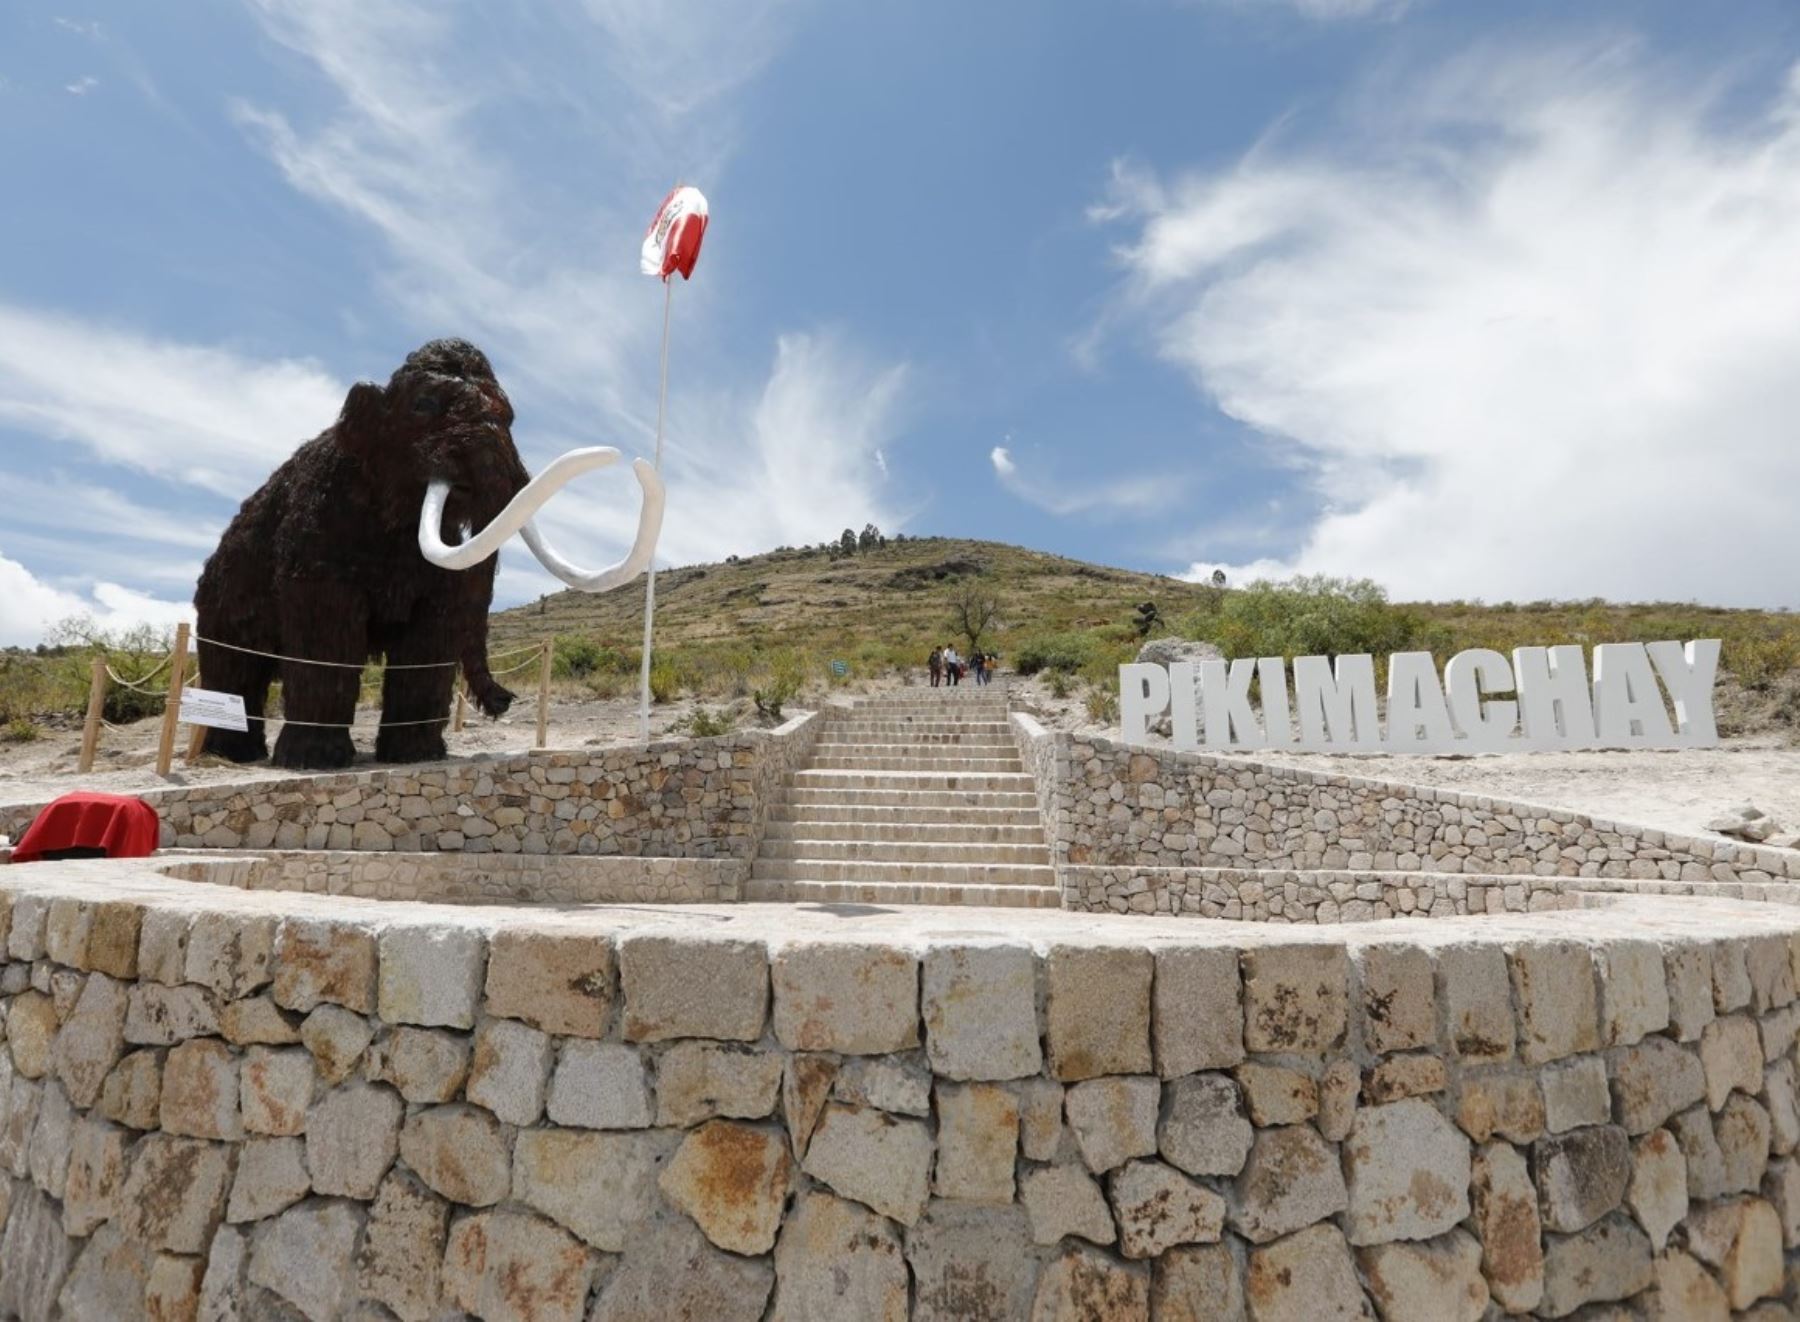 Con esculturas temáticas, el Gobierno Regional de Ayacucho pone en valor el sitio arqueológico Pikimachay. ANDINA/Difusión